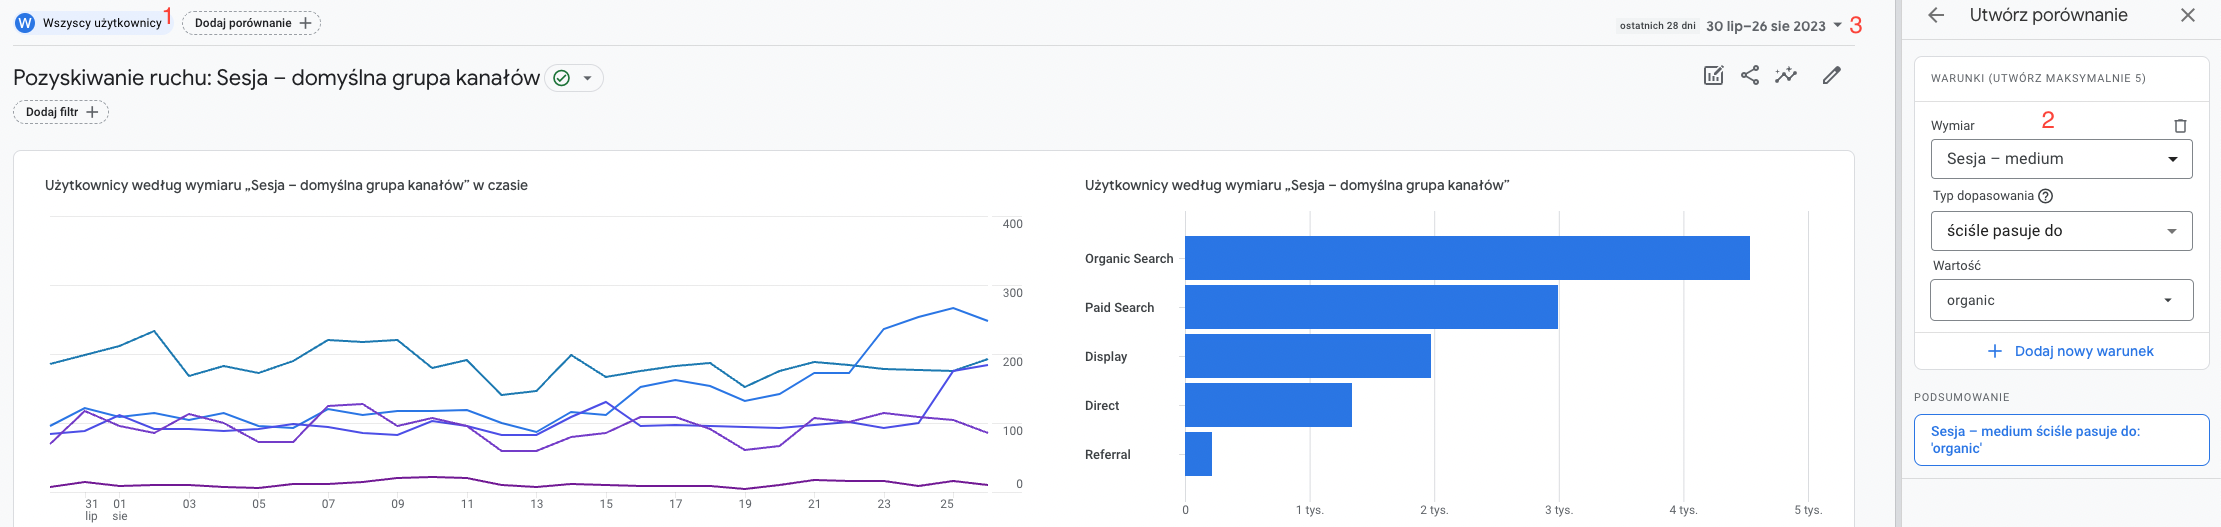 analiza SEO a magazinului: ecran google-analytics-users-organic